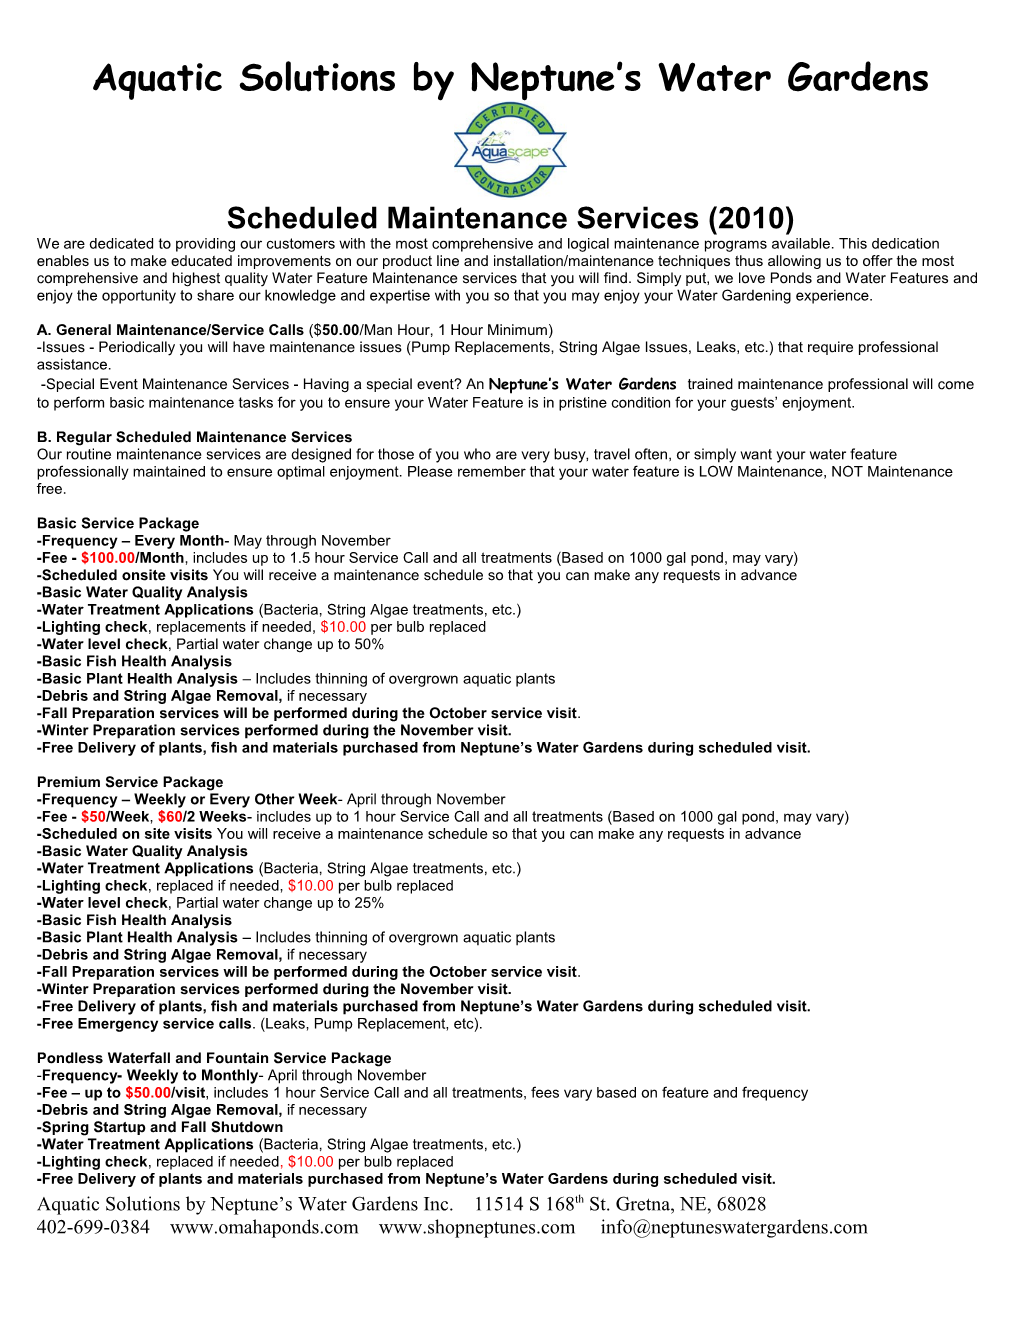 Scheduled Maintenance Services (2009)